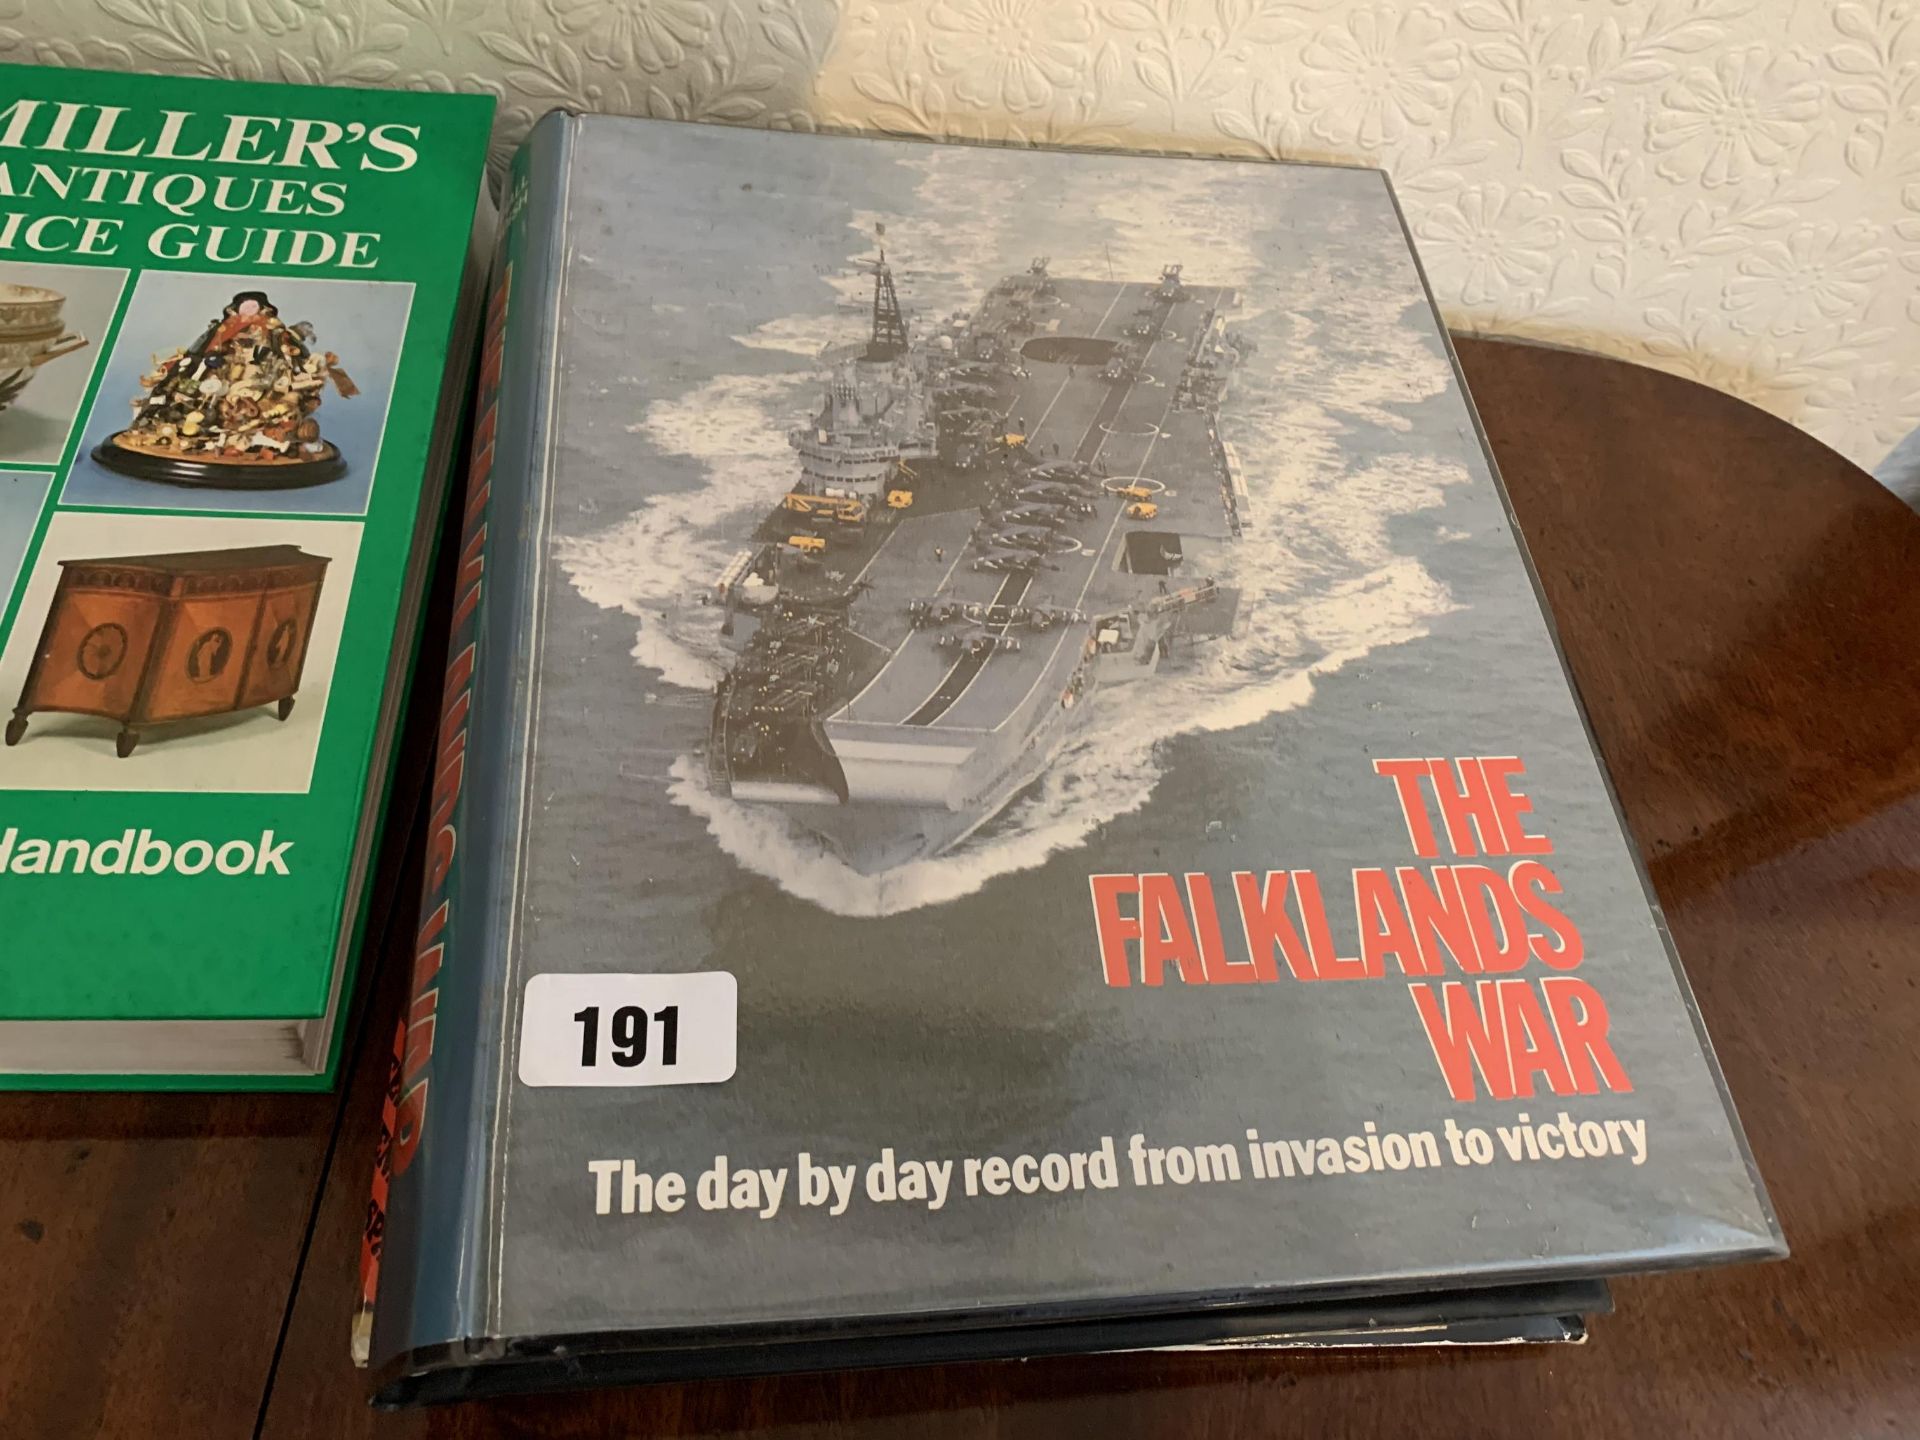 Falklands War & World War books